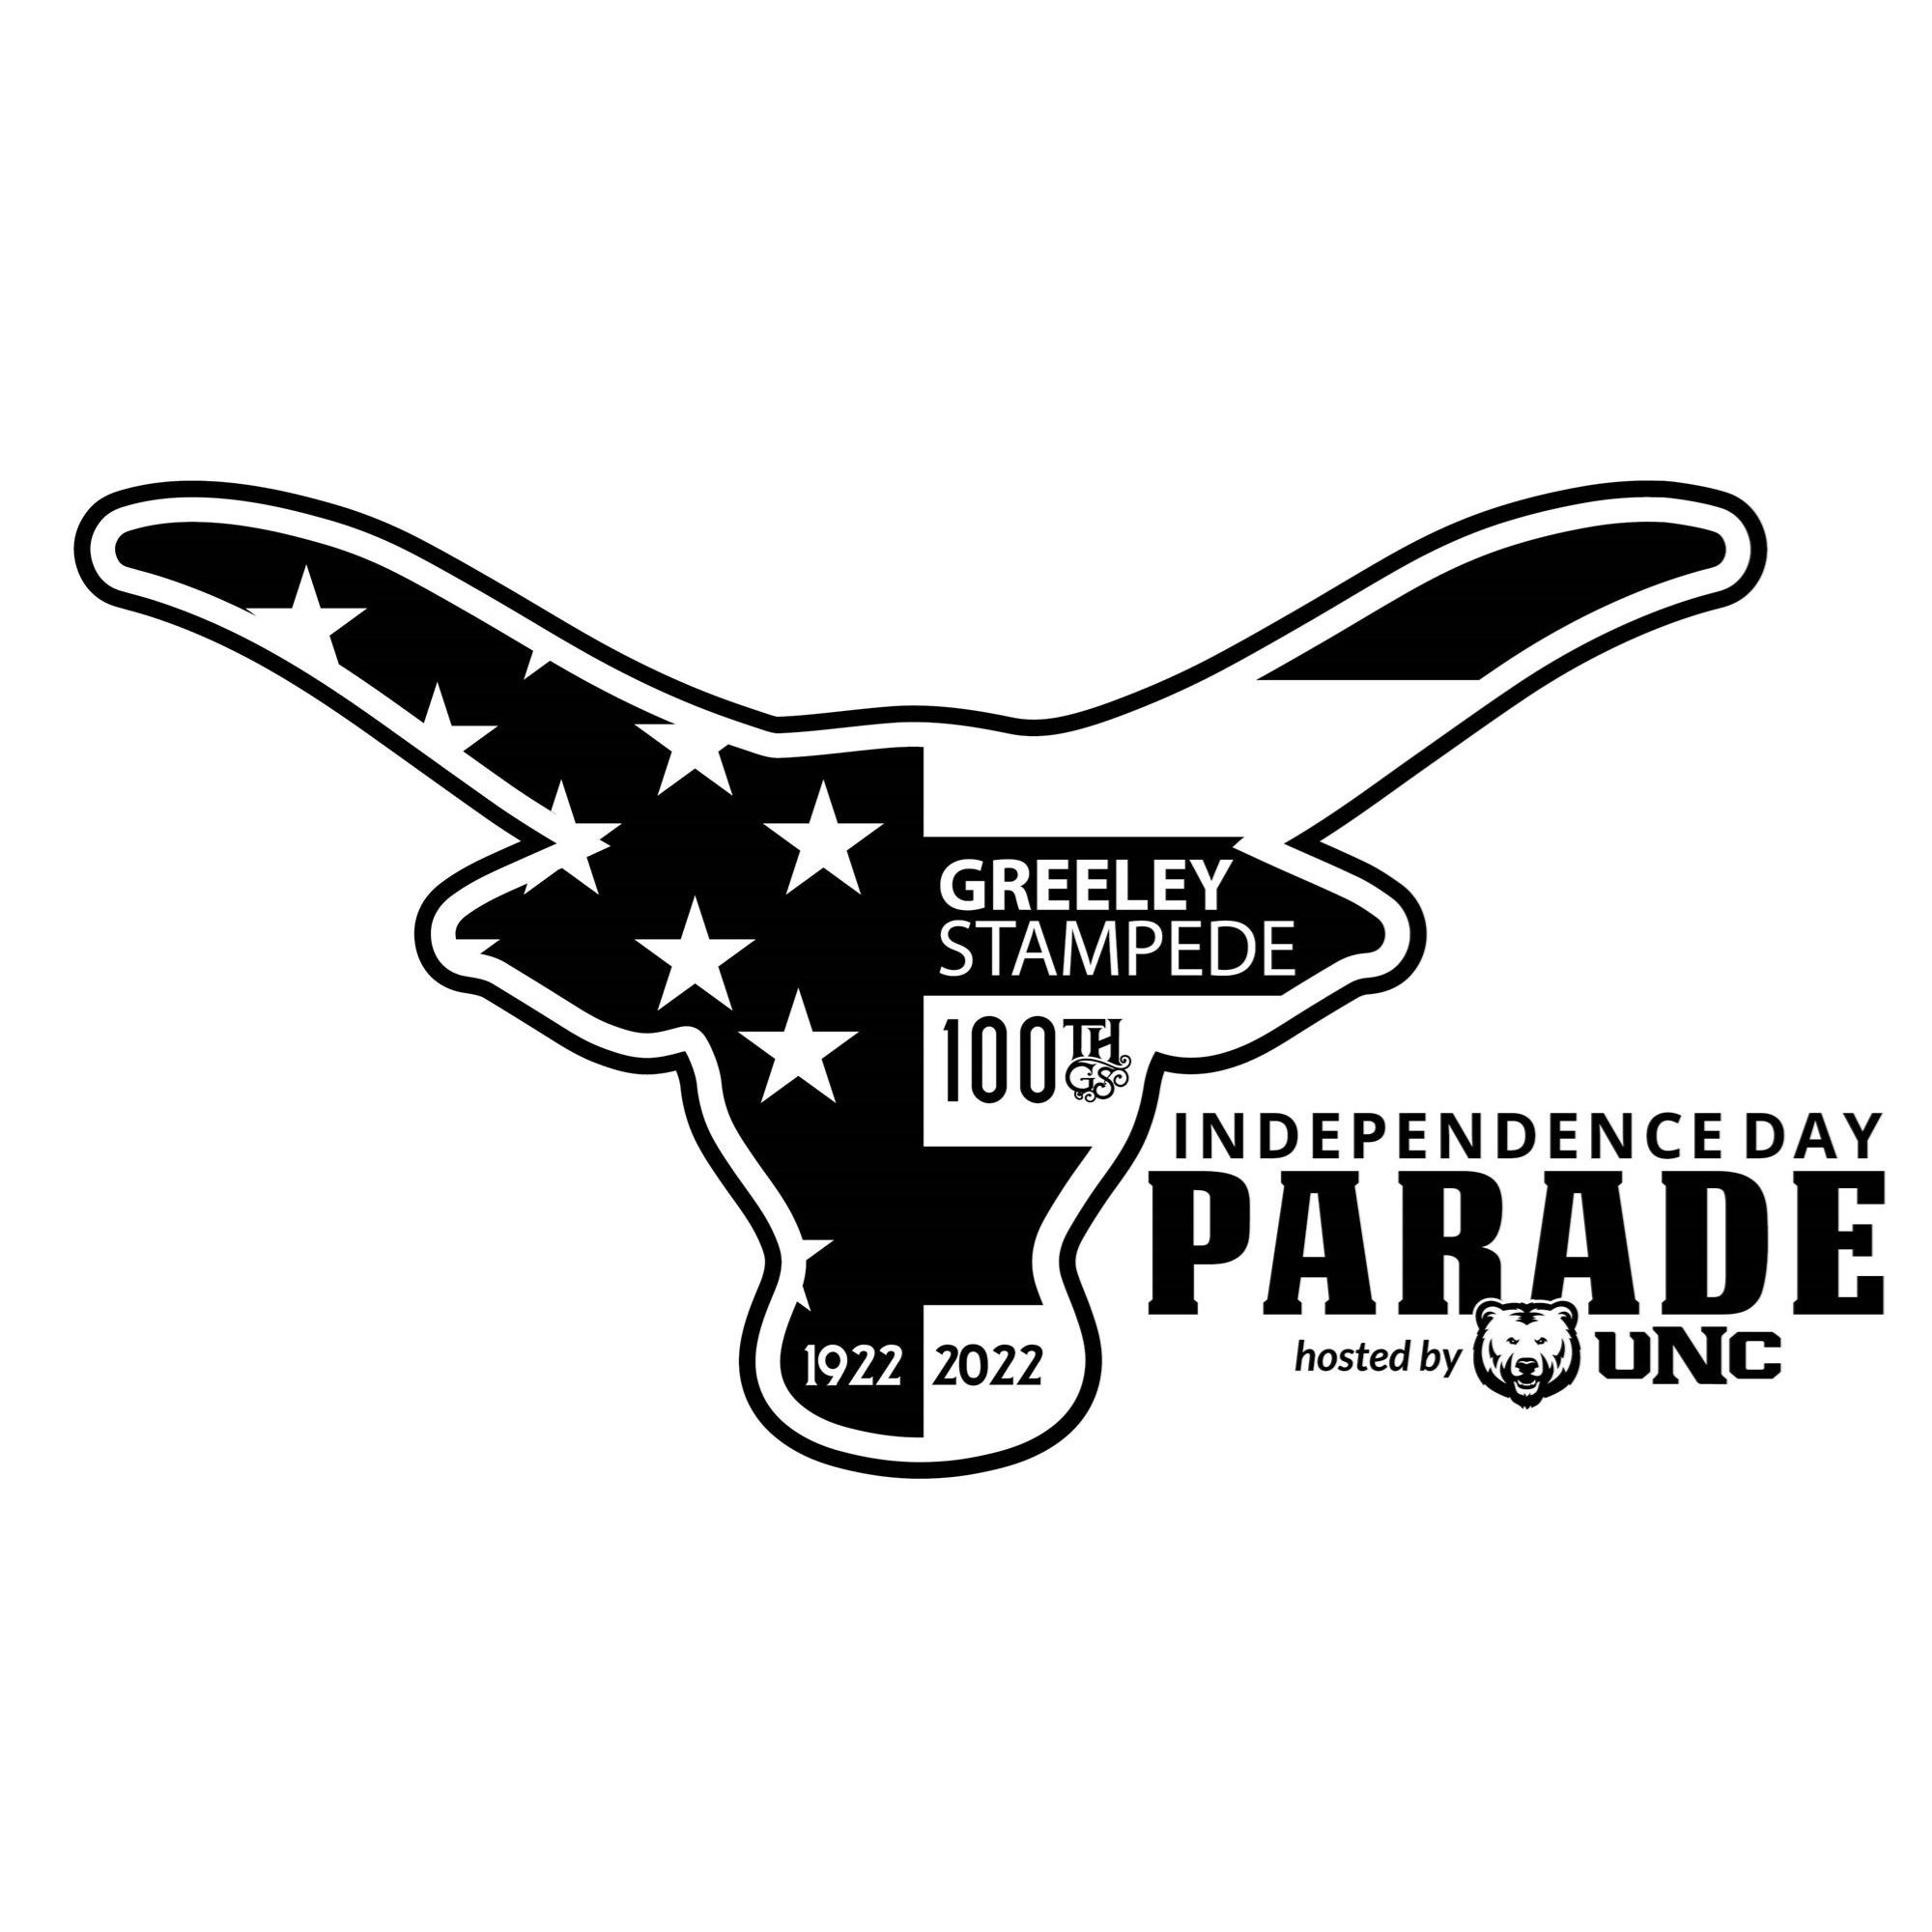 Parade Info